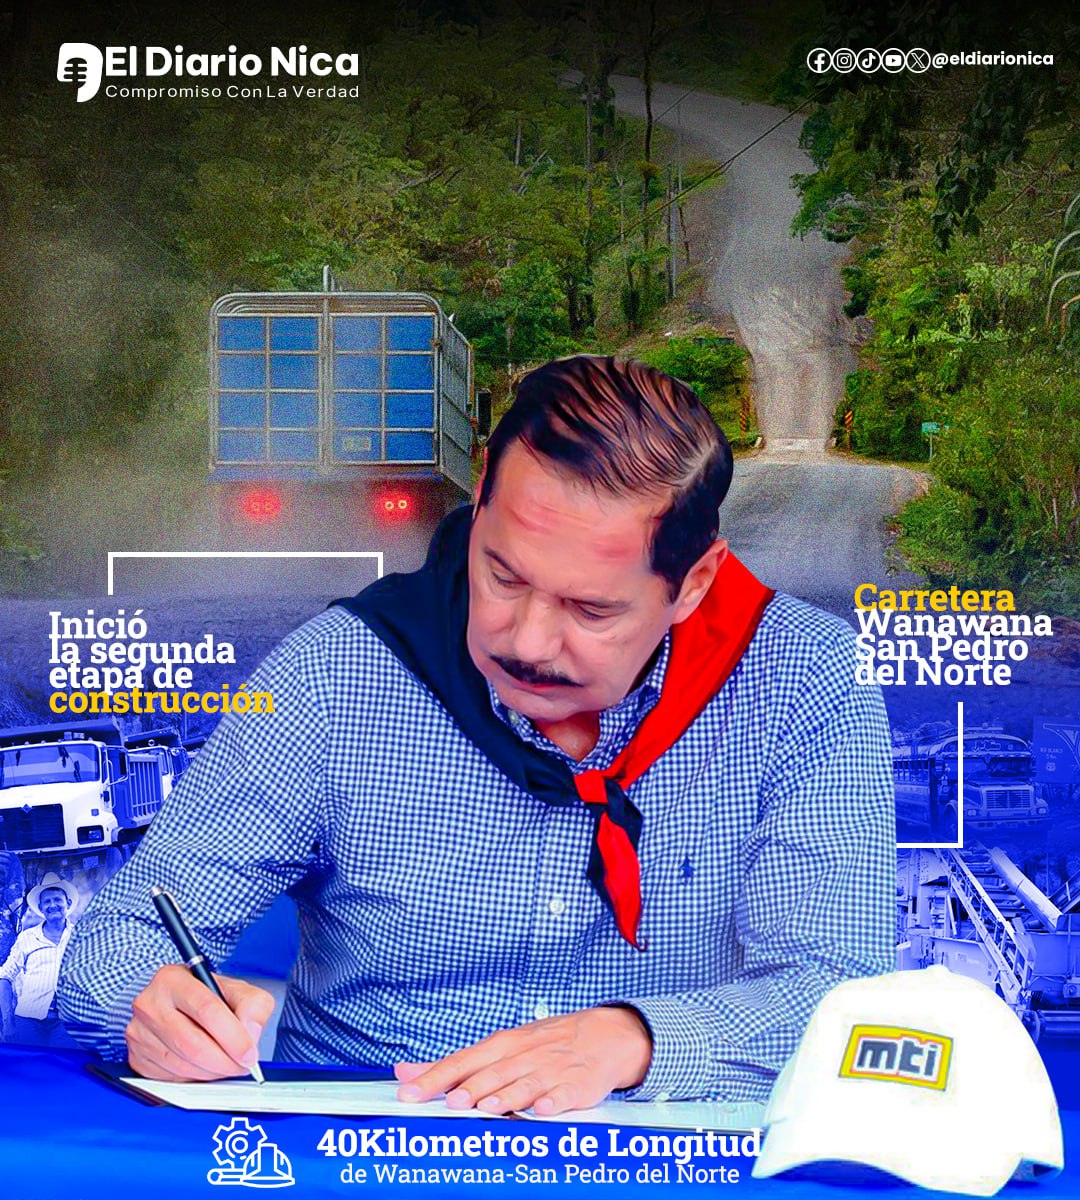 Carreteras modernas y seguras continúan abriendo paso al desarrollo de #Nicaragua.